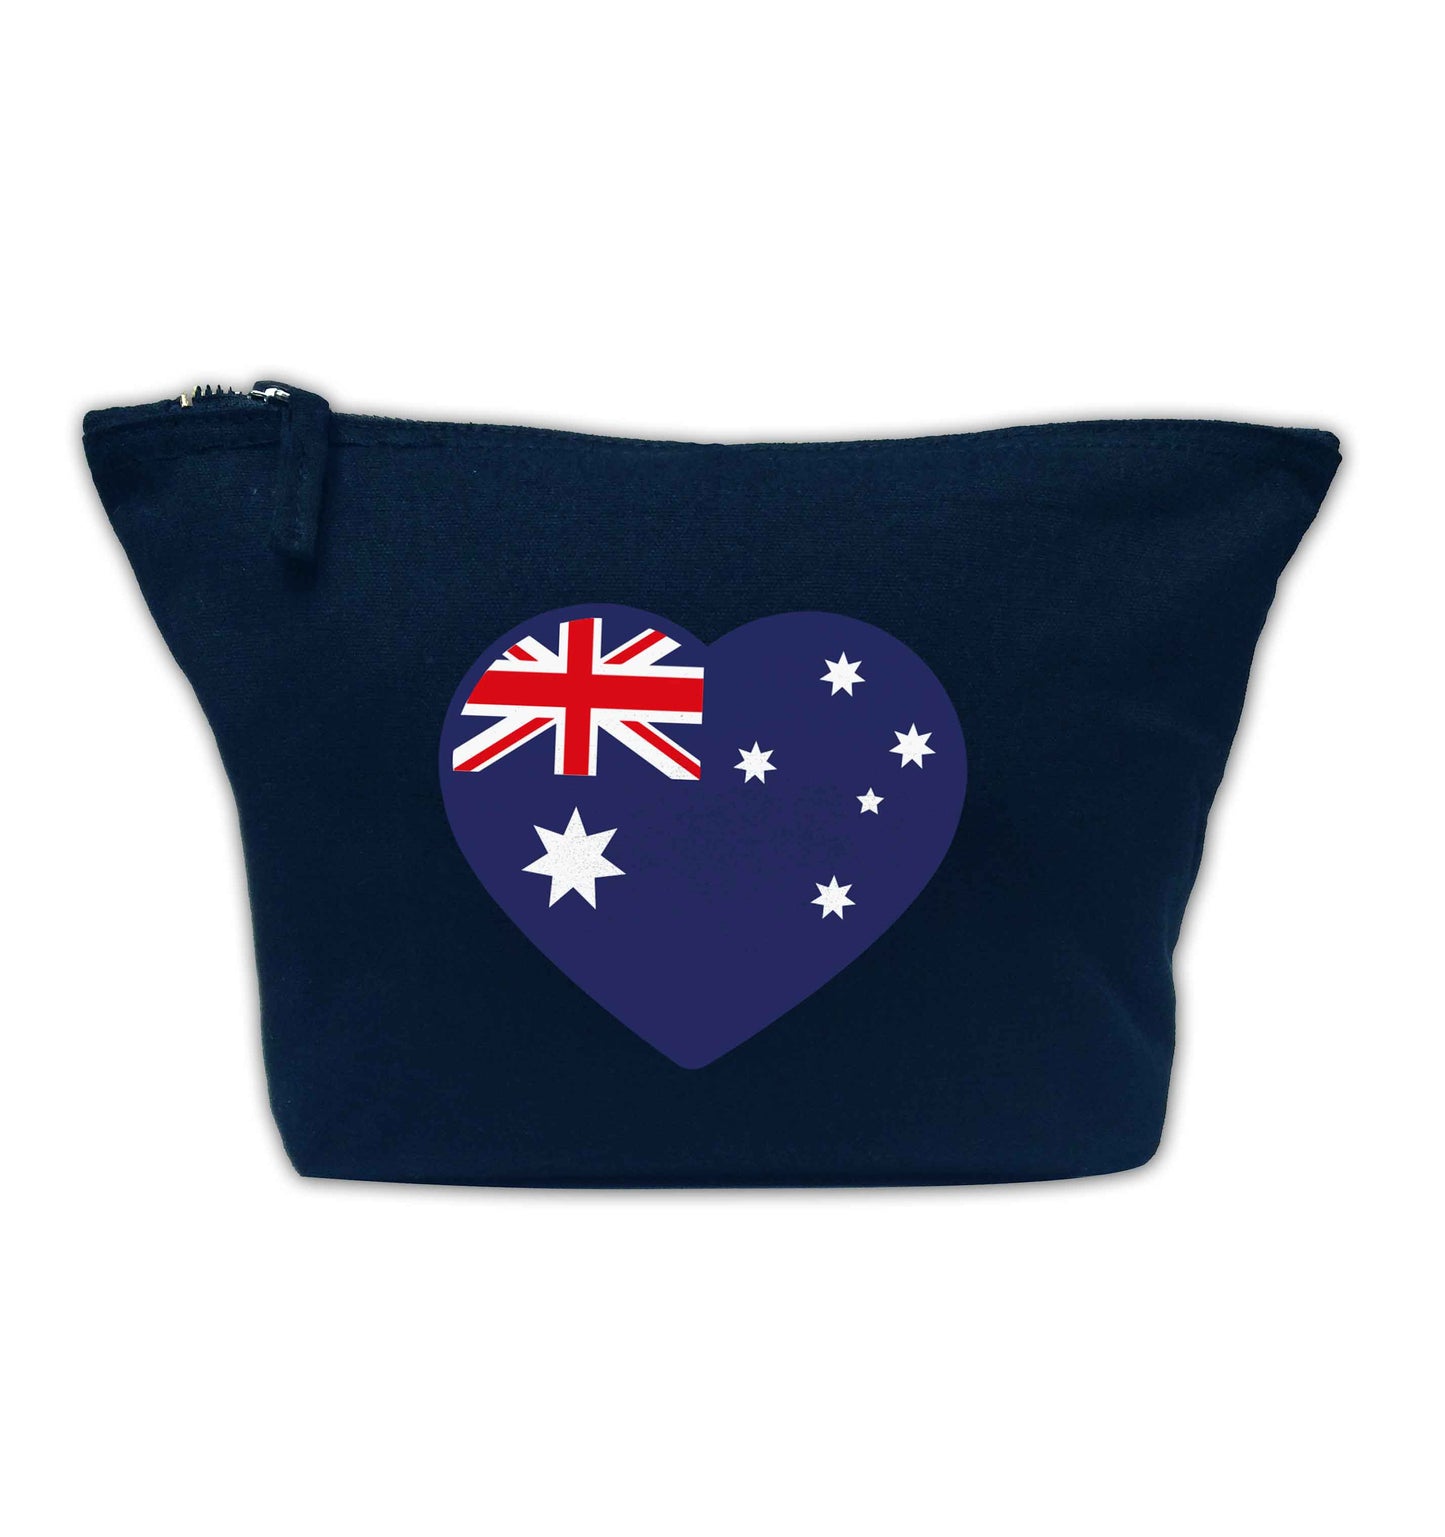 Australian Heart navy makeup bag